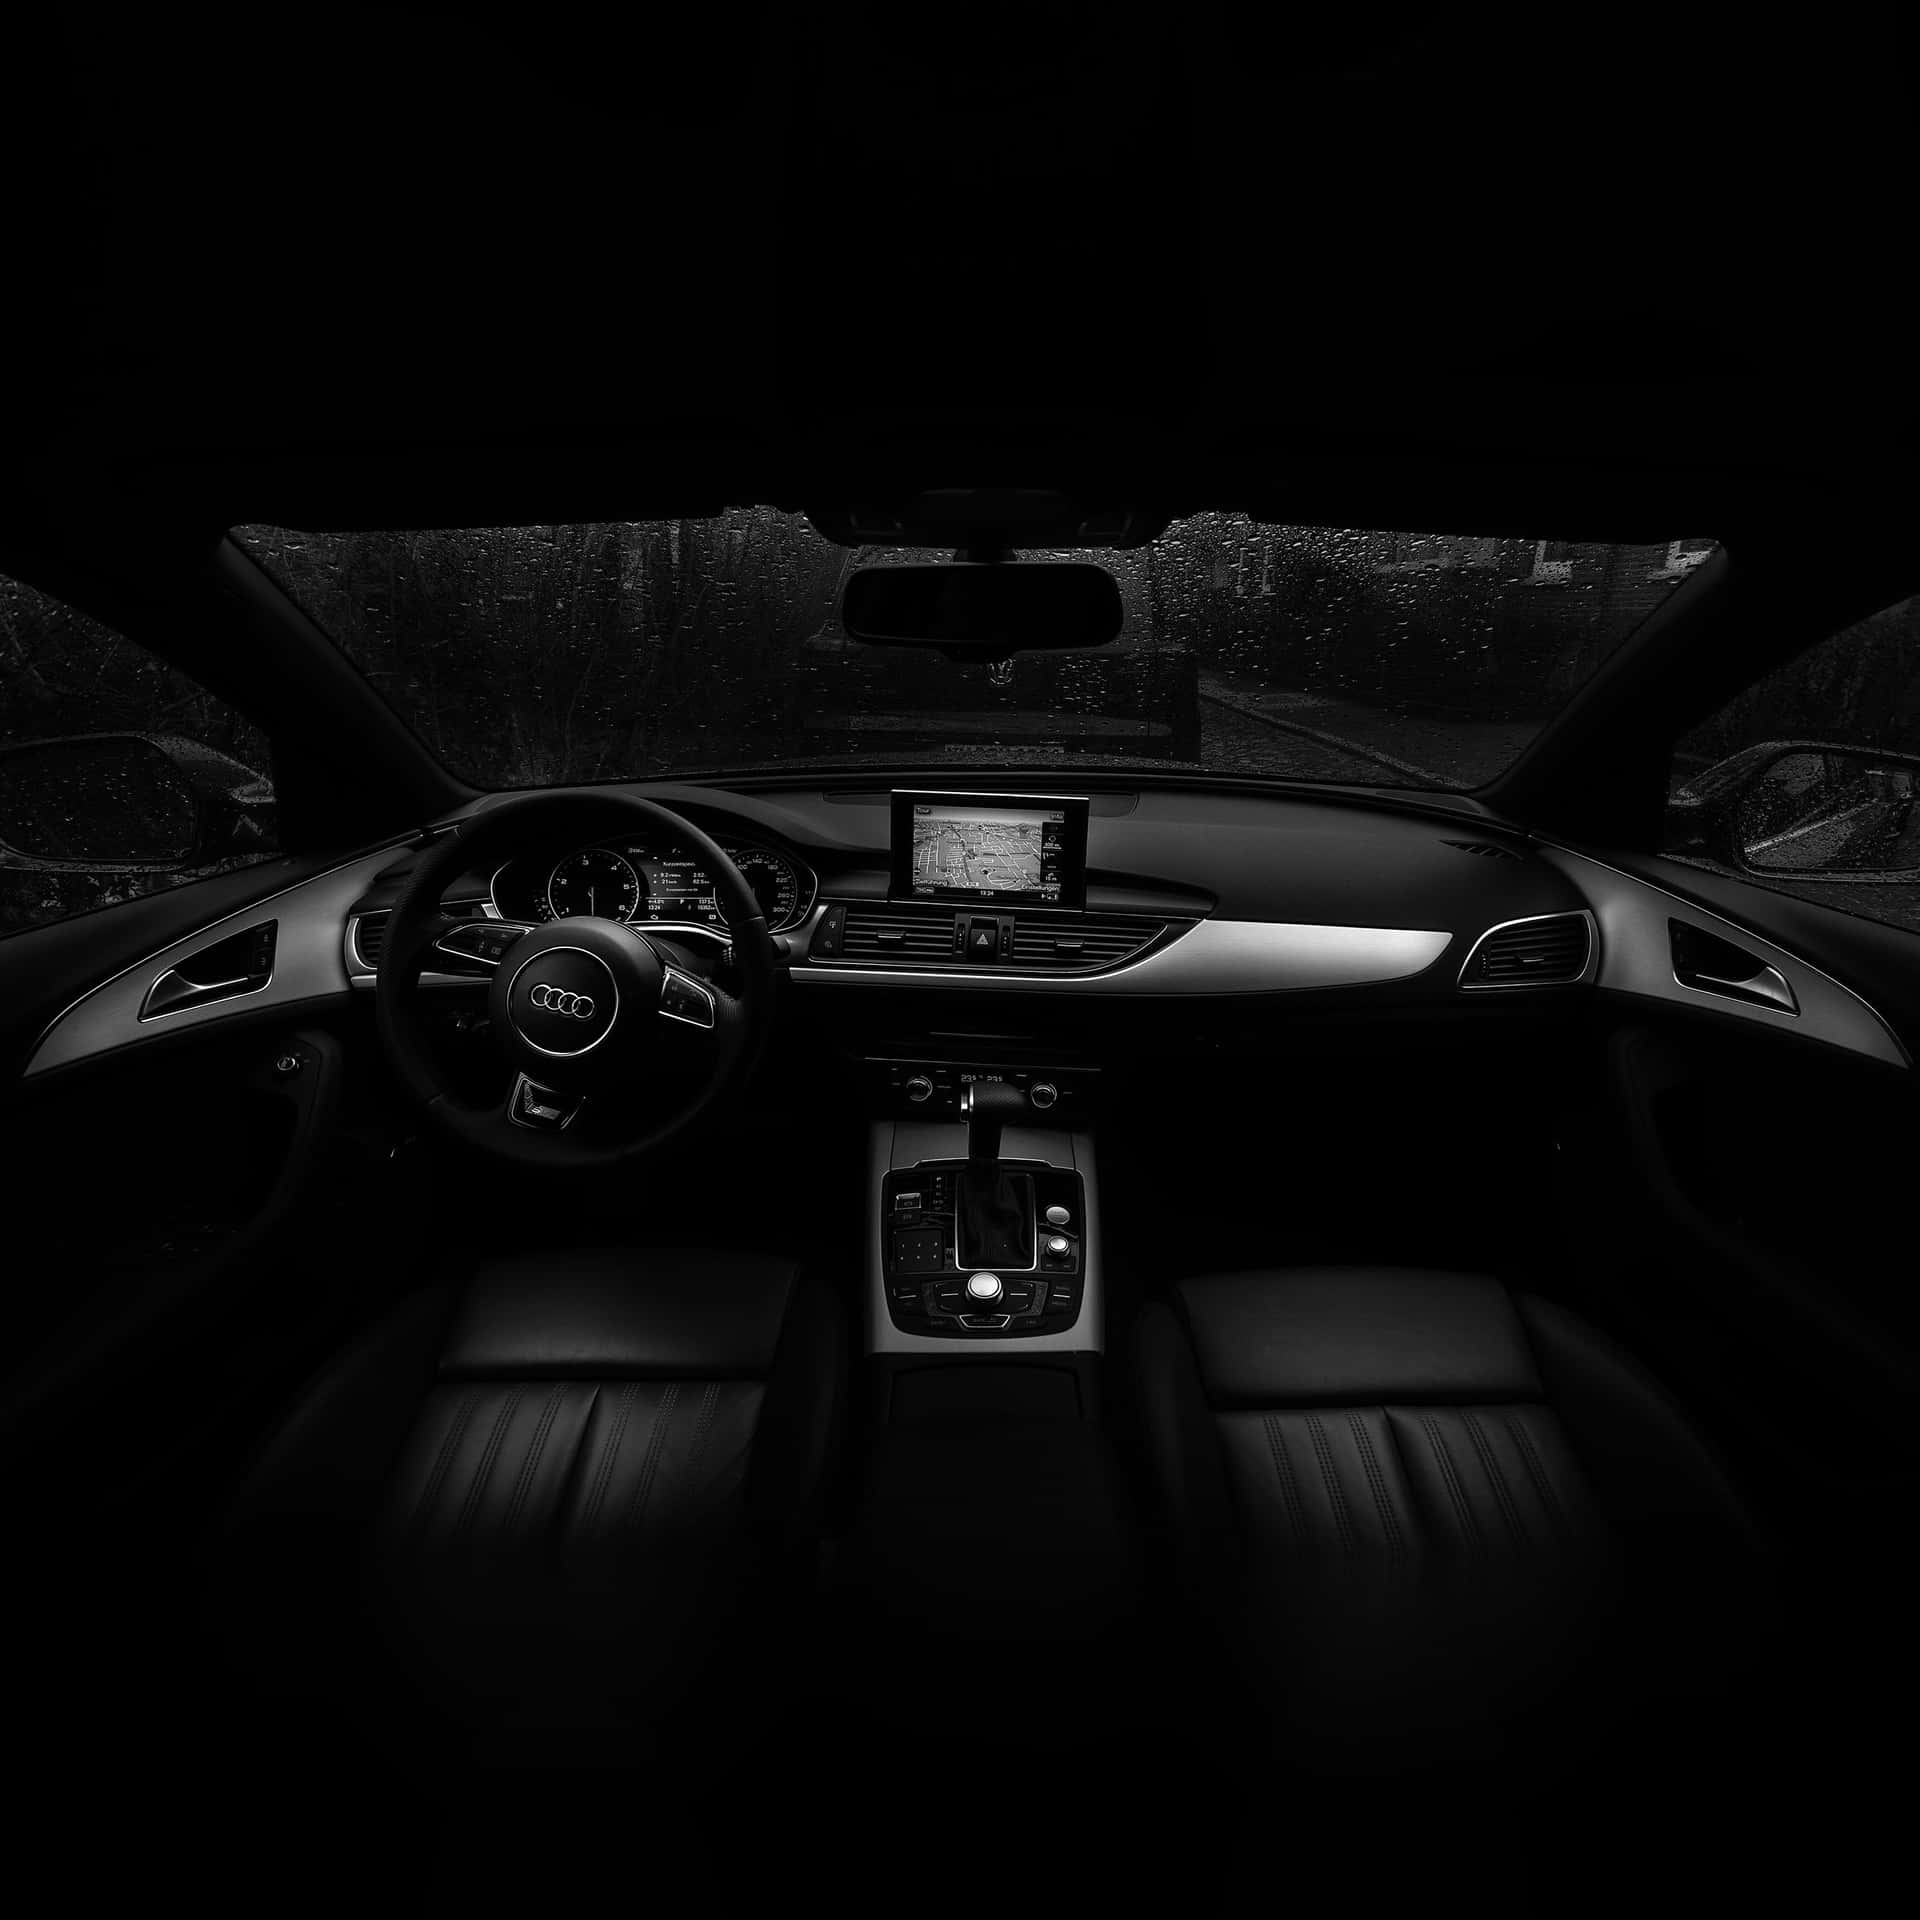 Audia6 Innenraum - Schwarz Und Weiß